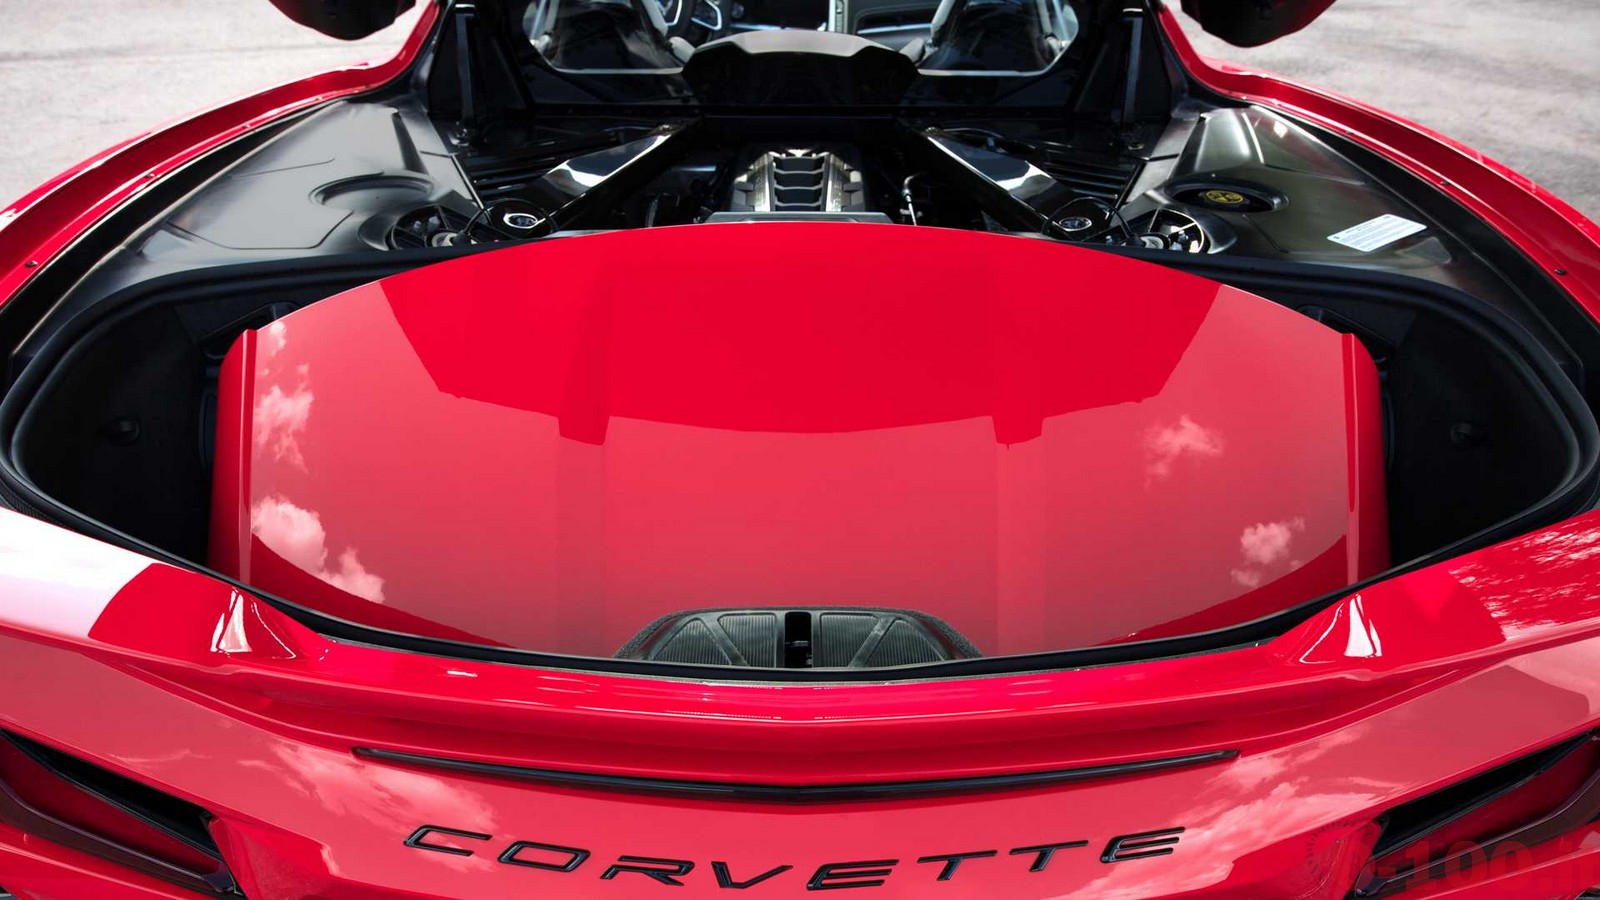 chevrolet_corvette_c8_rear_mid_v8_engine_0-100_69